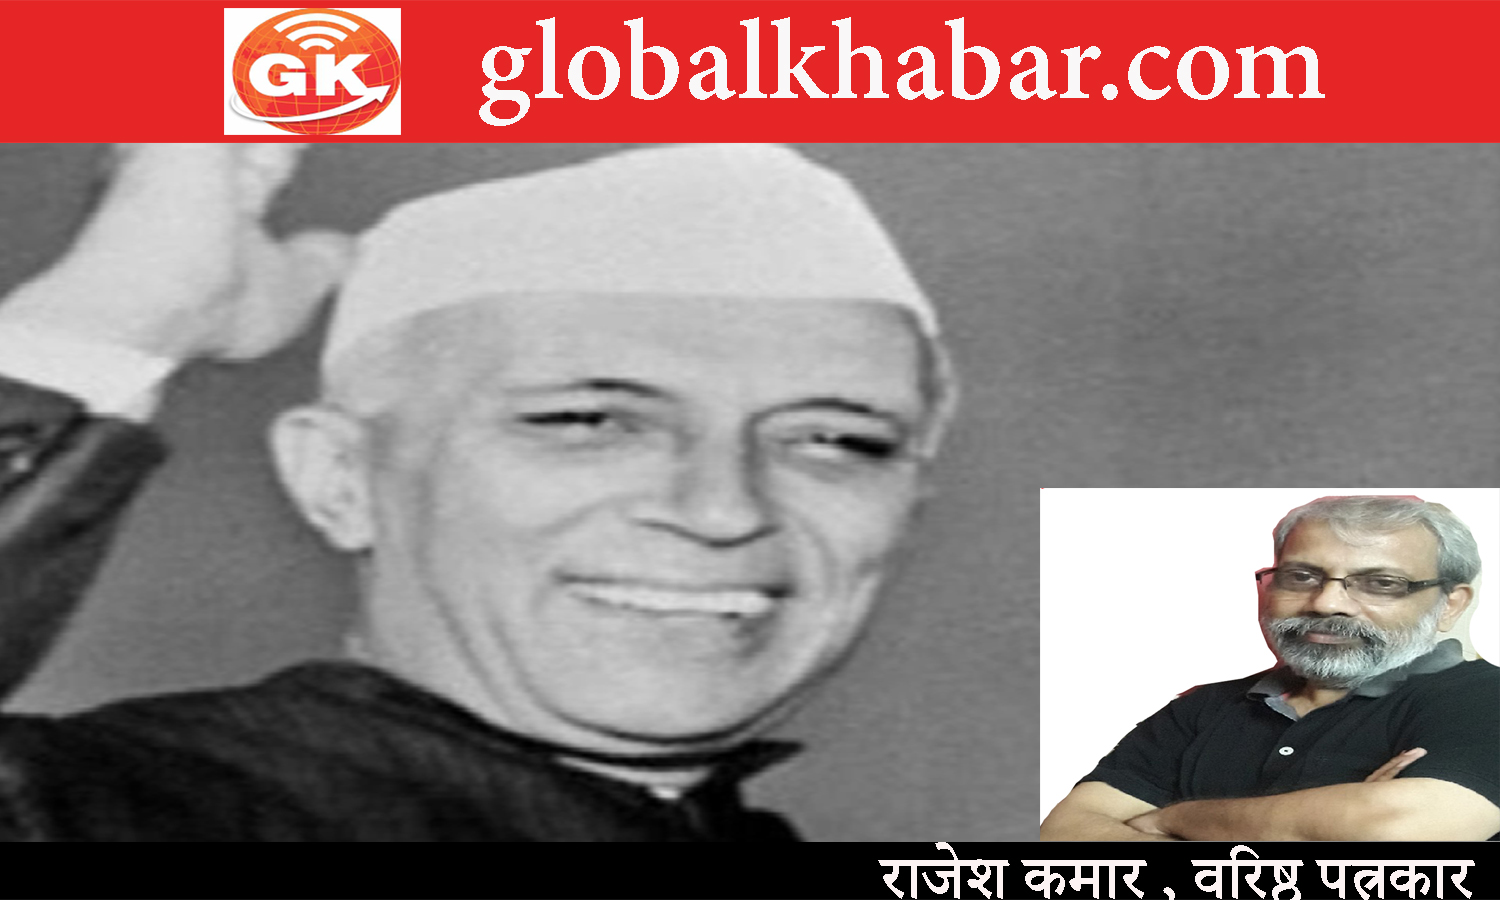 मजबूत व स्वस्थ लोकतंत्र के लिये प्रथम प्रधानमंत्री नेहरू को साधुवाद : वरिष्ठ पत्रकार राजेश कुमार। 